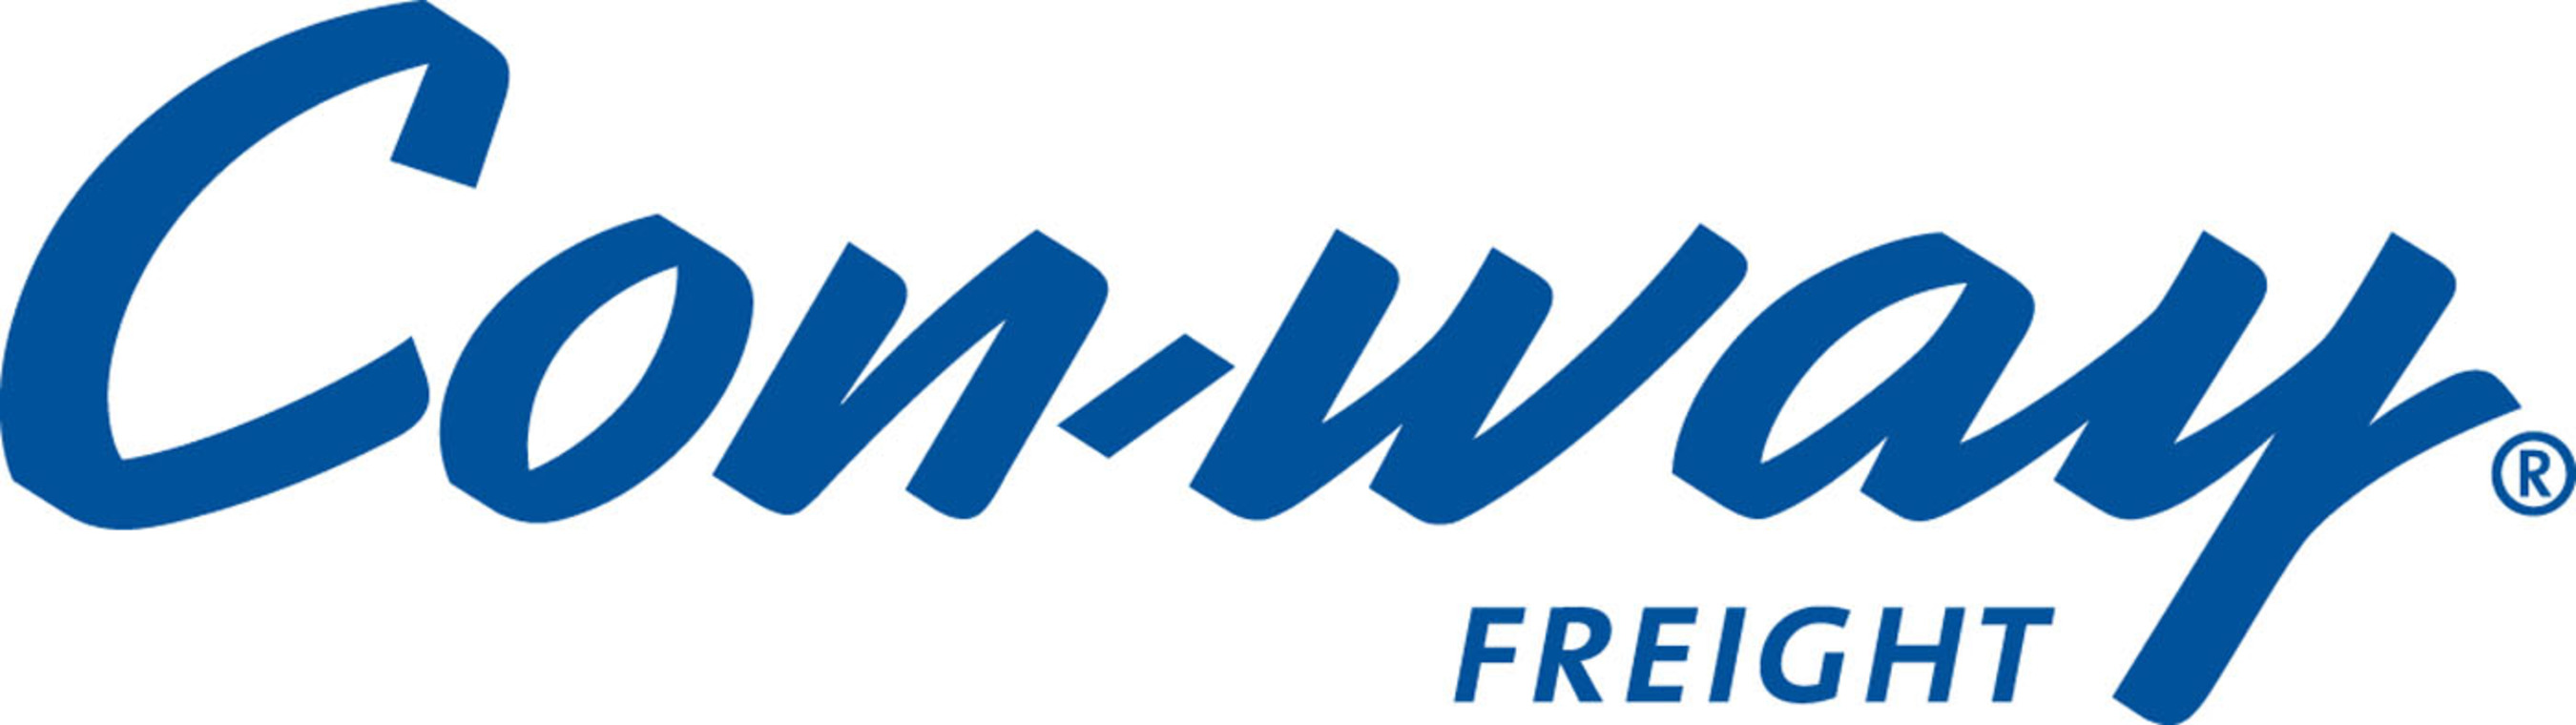 Con-way Freight logo